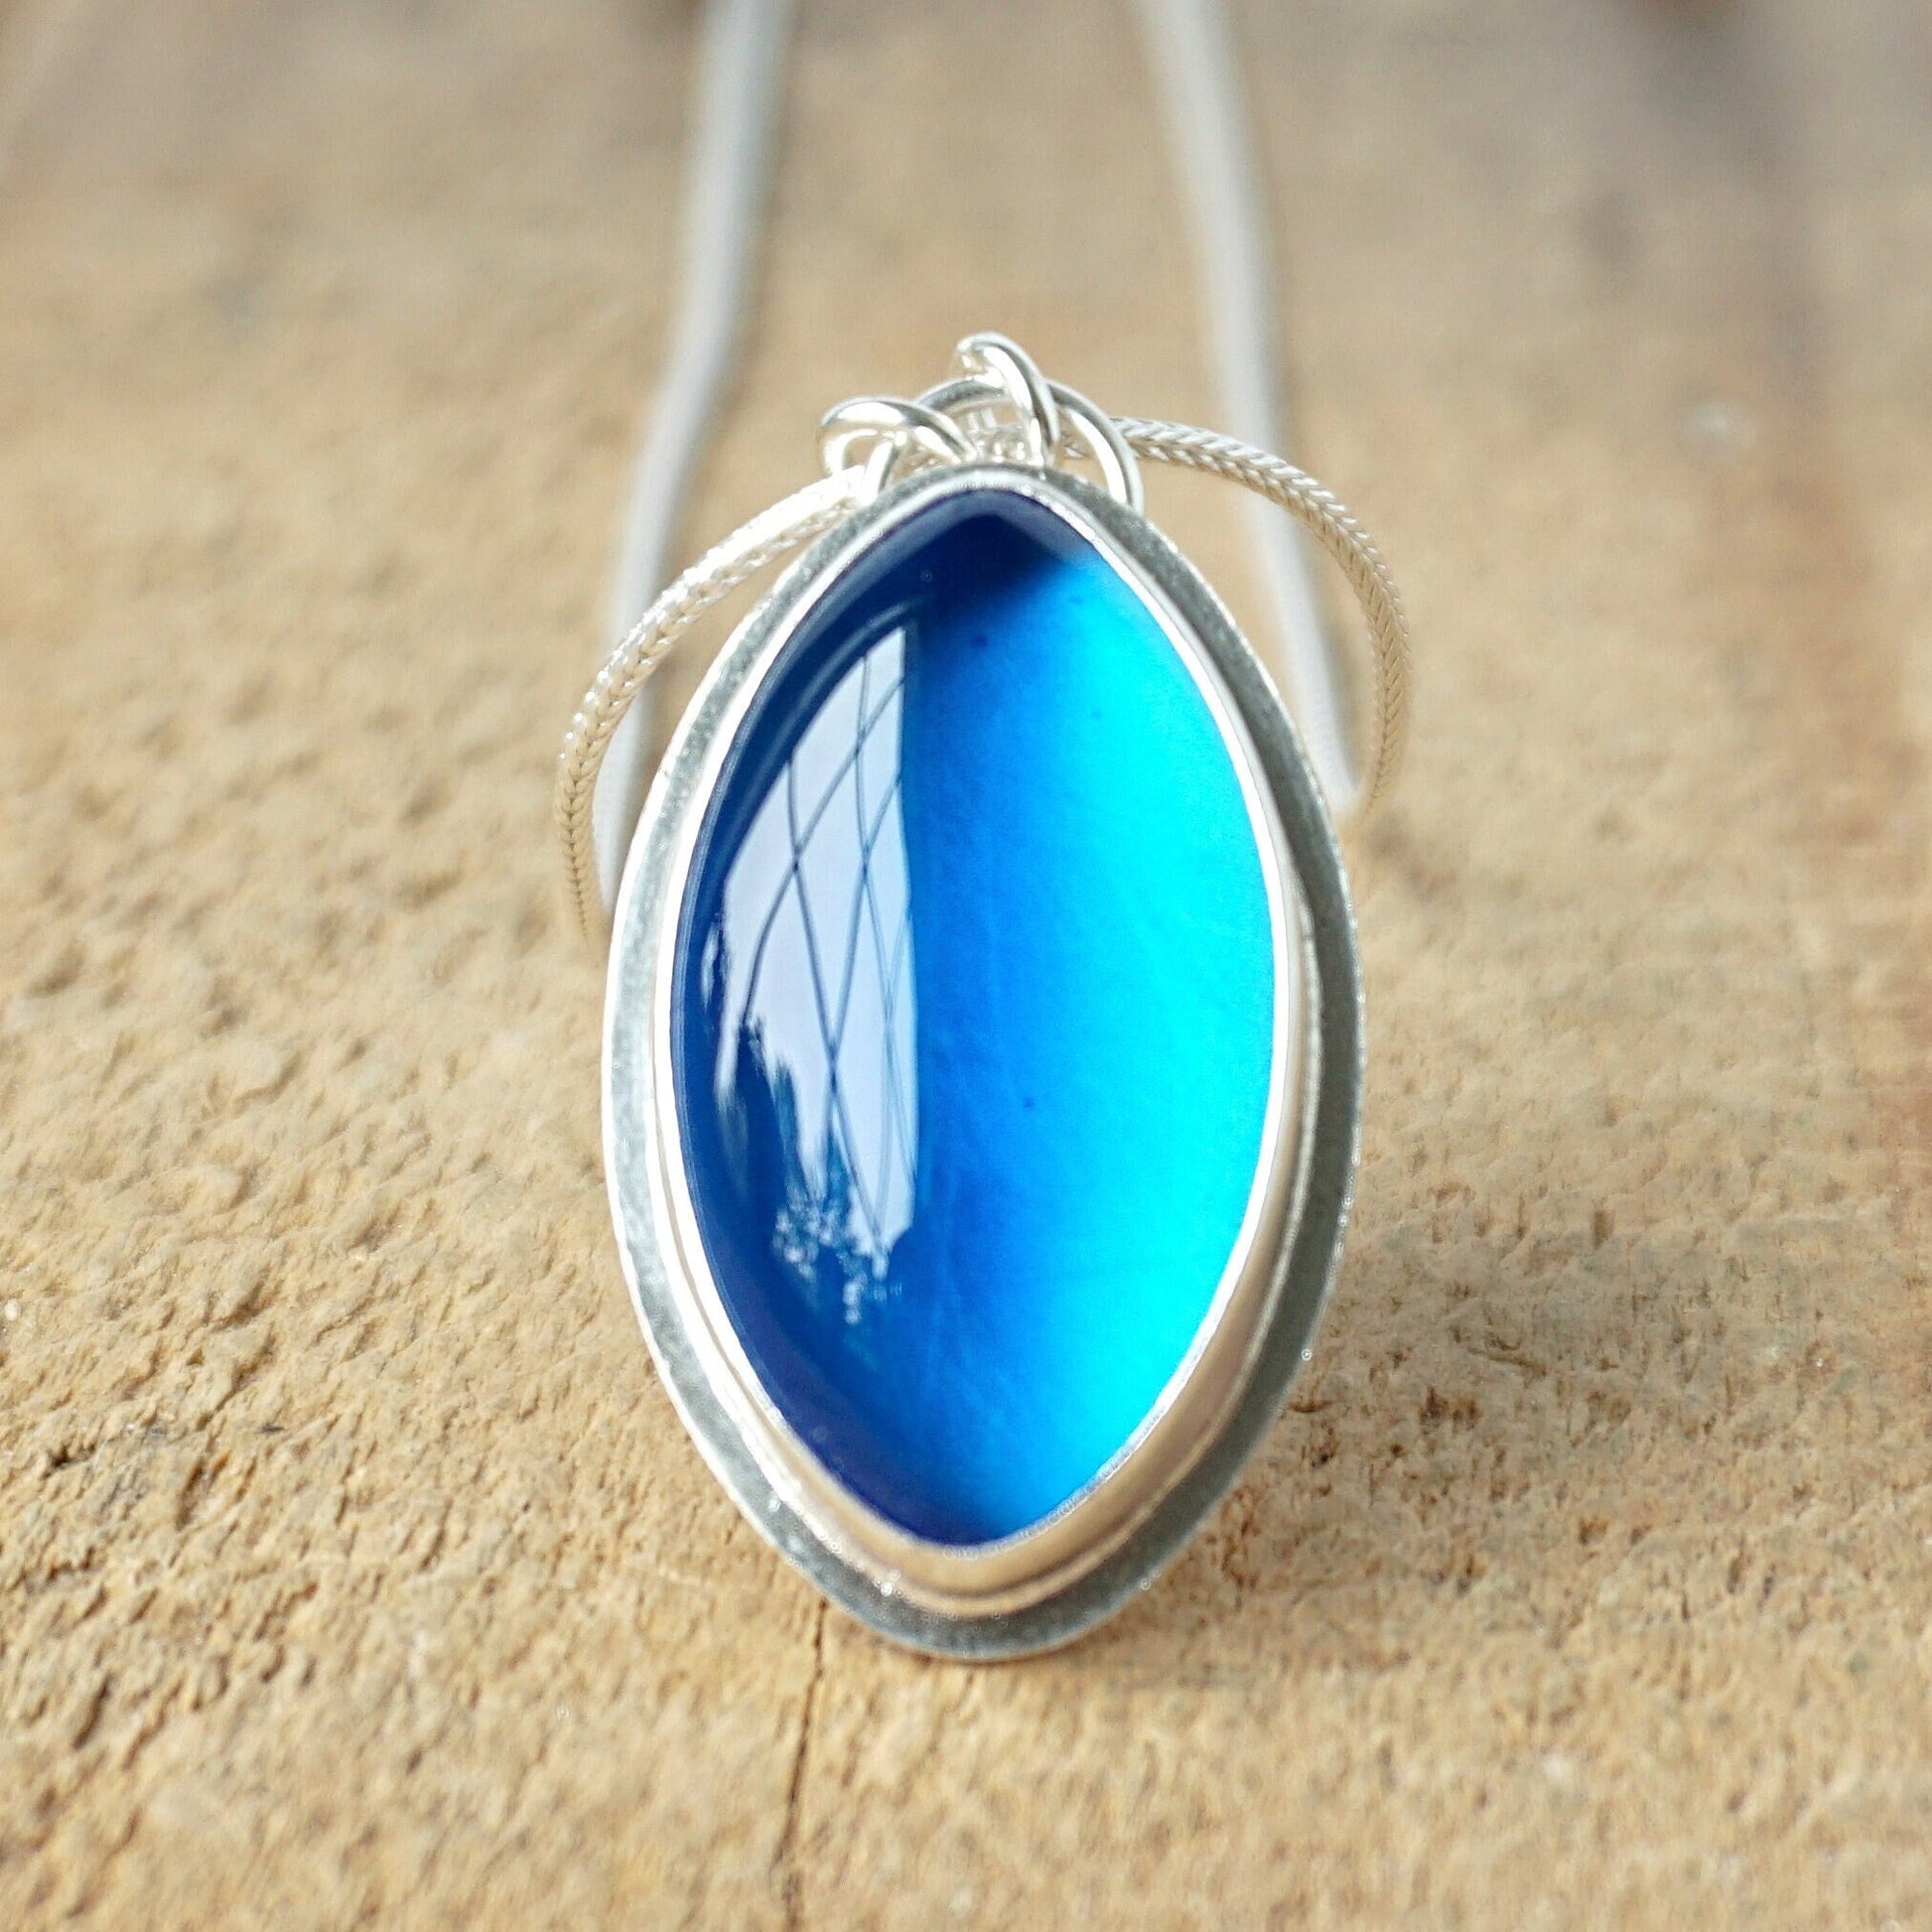 Dark Aqua Blue Antique Glass Pendant - Glass Jewelry, Glass Necklace, Insulator Glass, Boho Necklace, Boho Jewelry